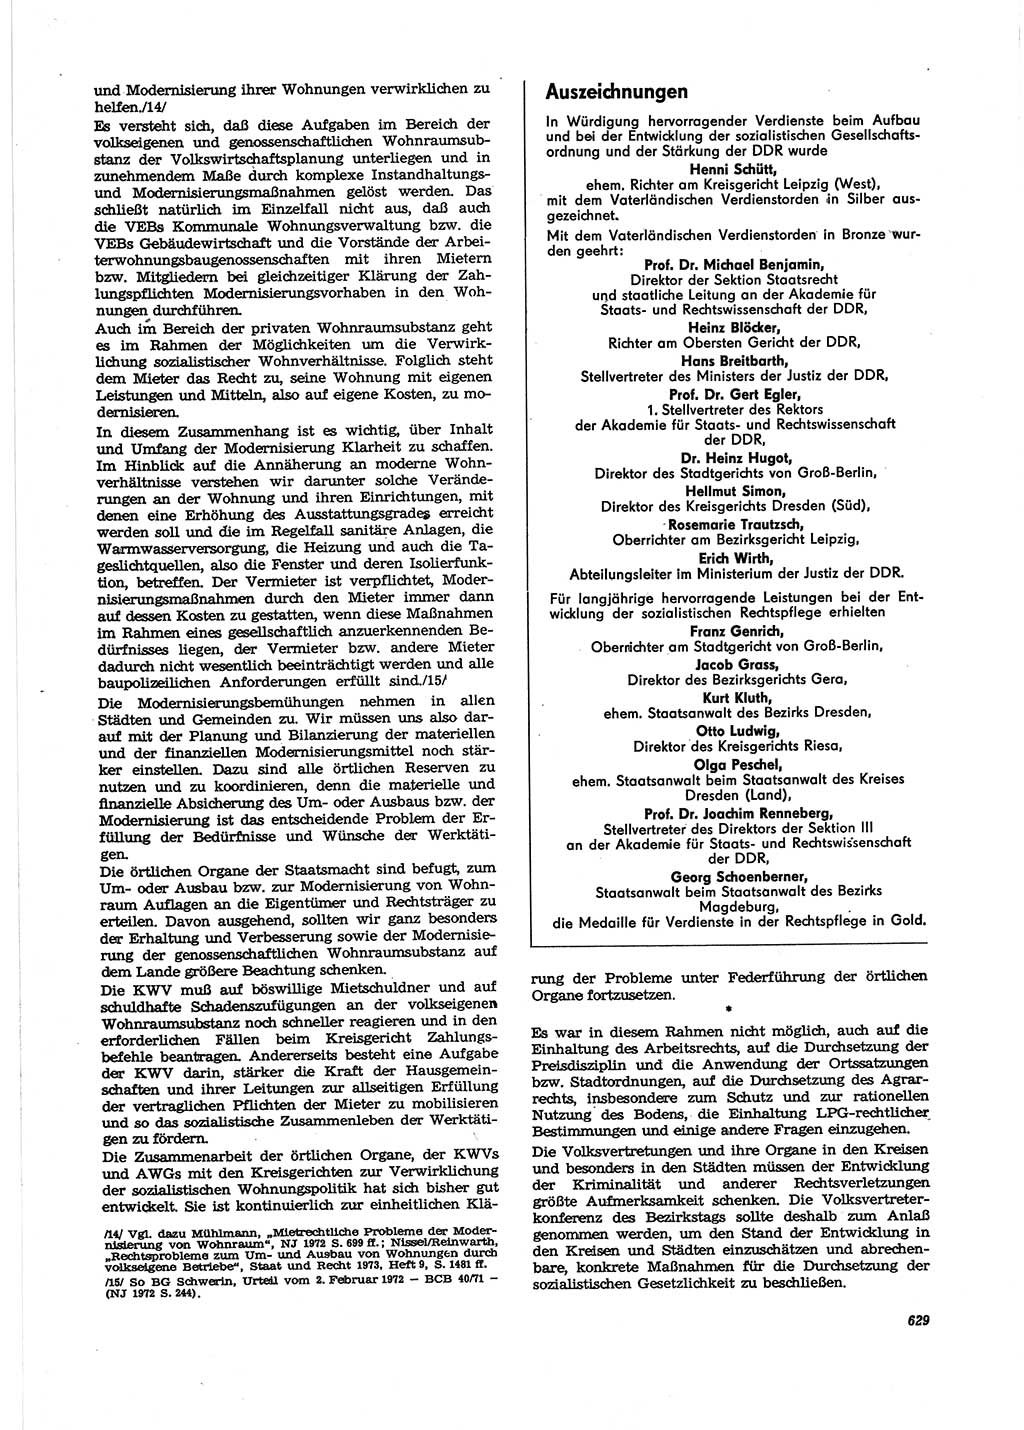 Neue Justiz (NJ), Zeitschrift für Recht und Rechtswissenschaft [Deutsche Demokratische Republik (DDR)], 27. Jahrgang 1973, Seite 629 (NJ DDR 1973, S. 629)